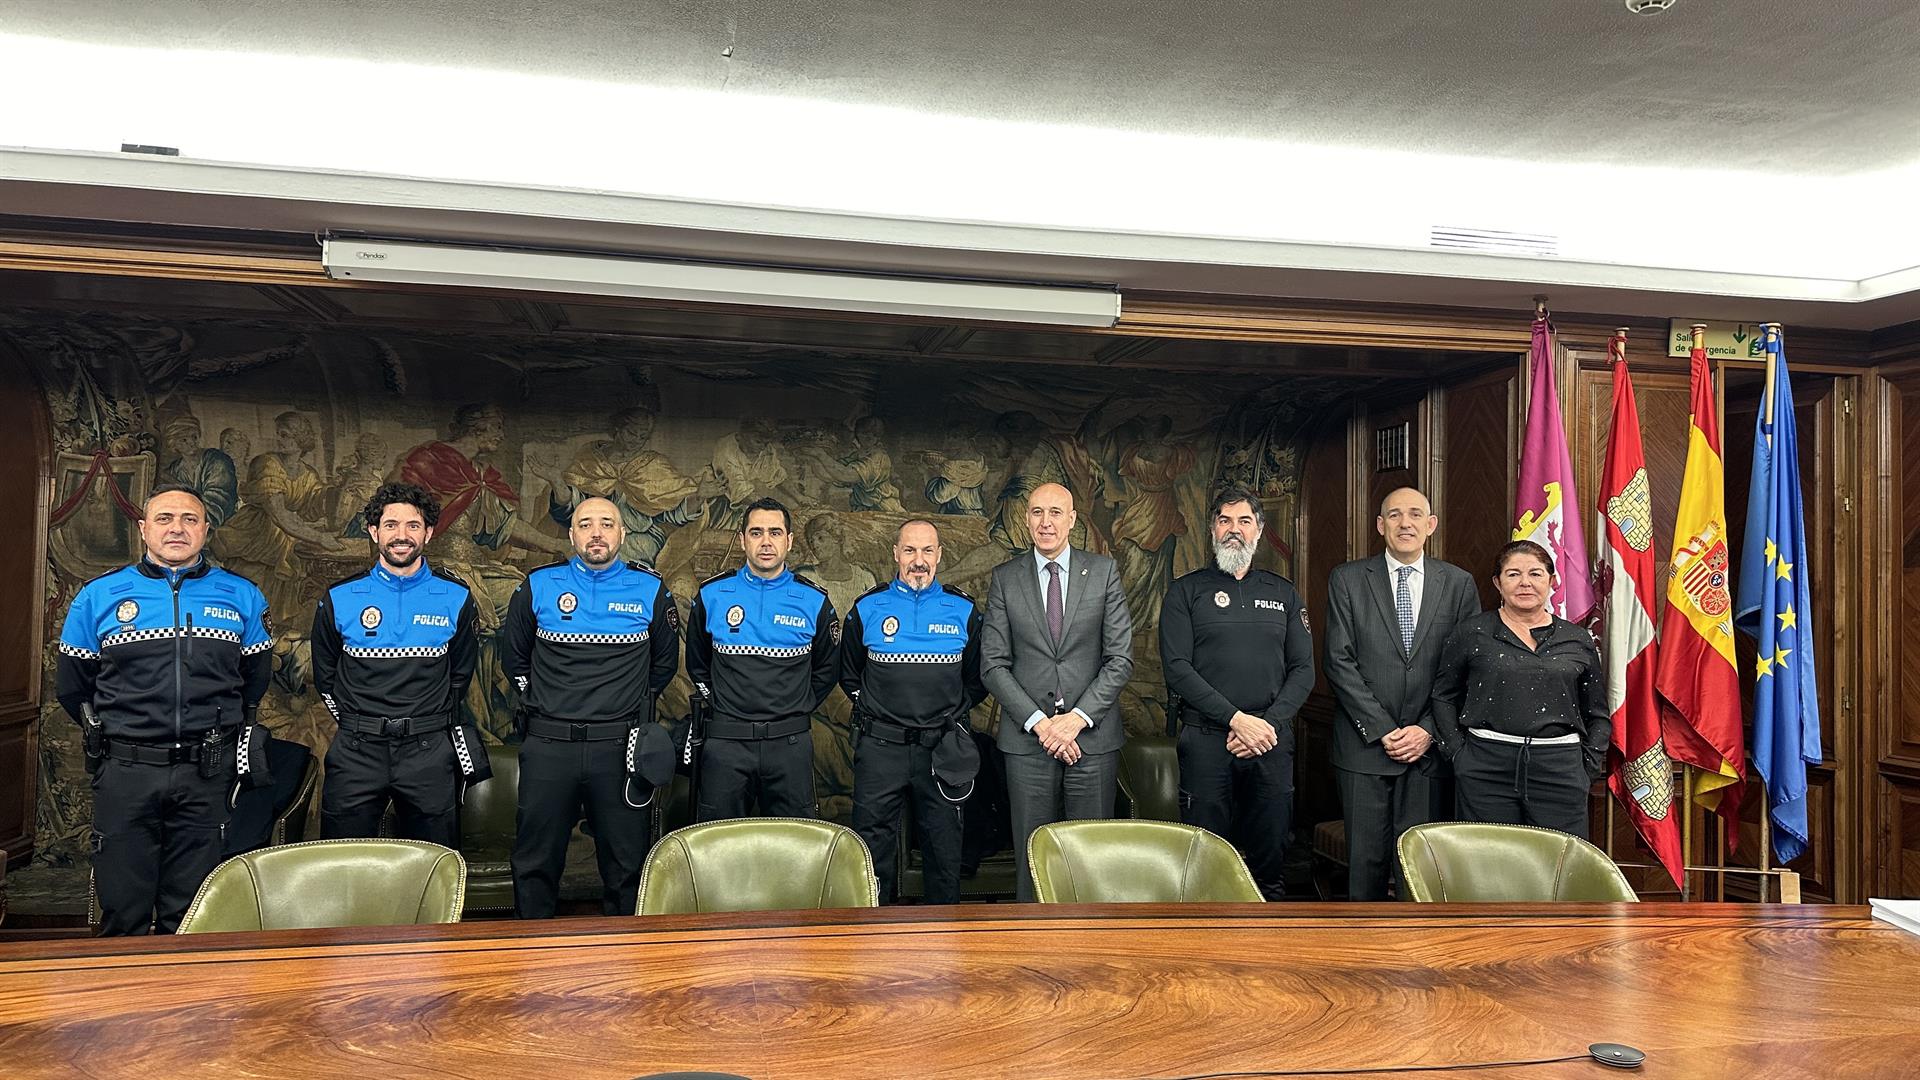 Los nuevos policías de León junto con el alcalde, José Antonio Diez. | L.N.C.